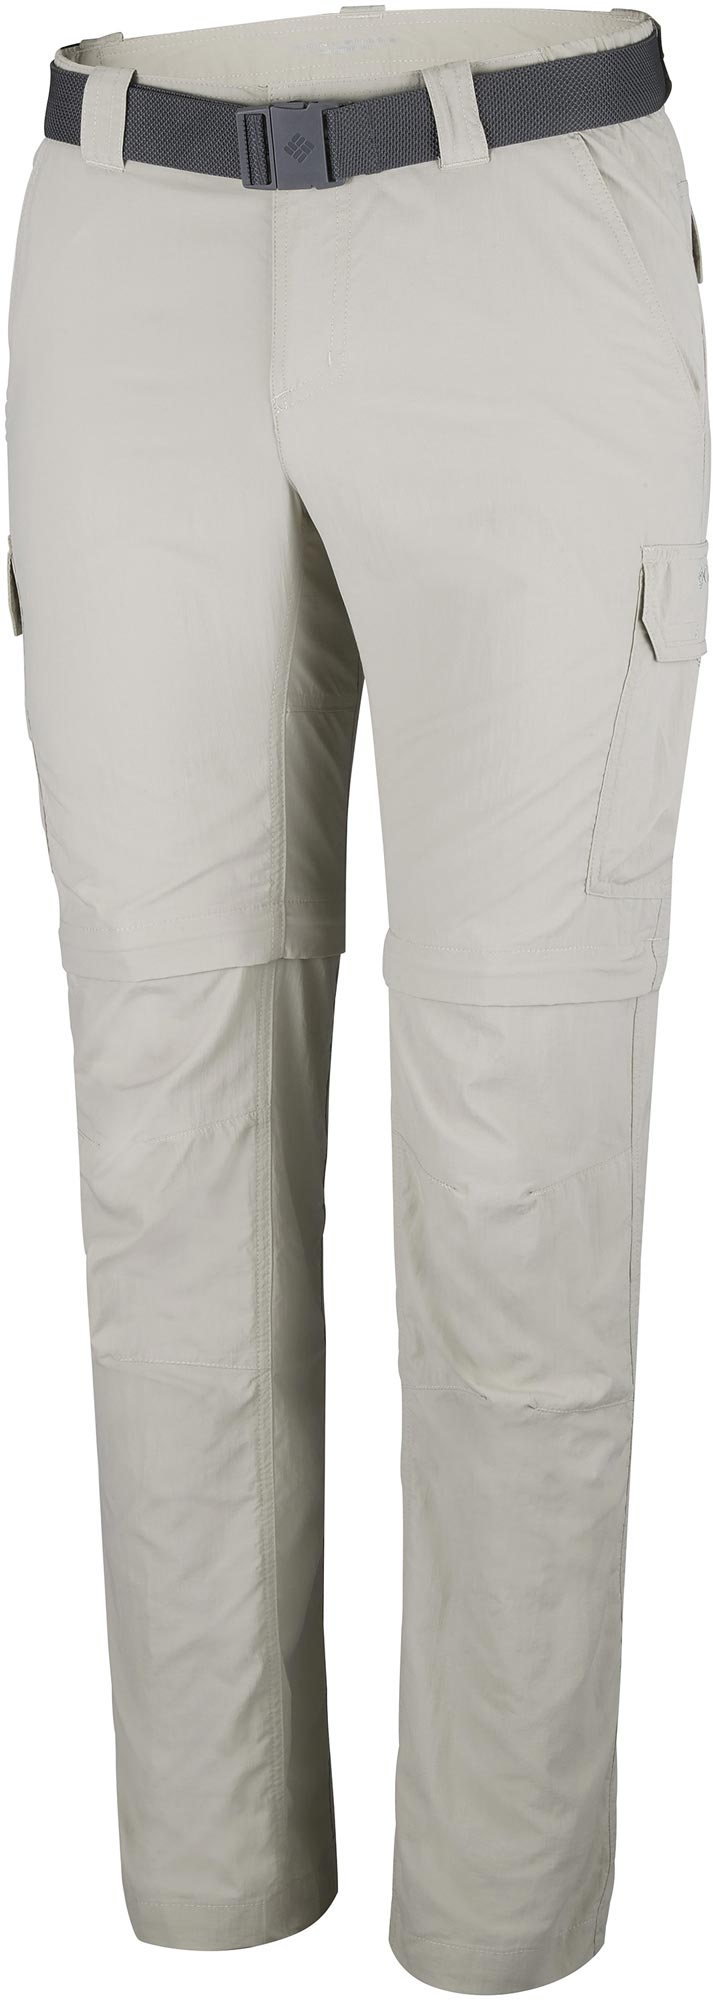 Men's outdoor trousers